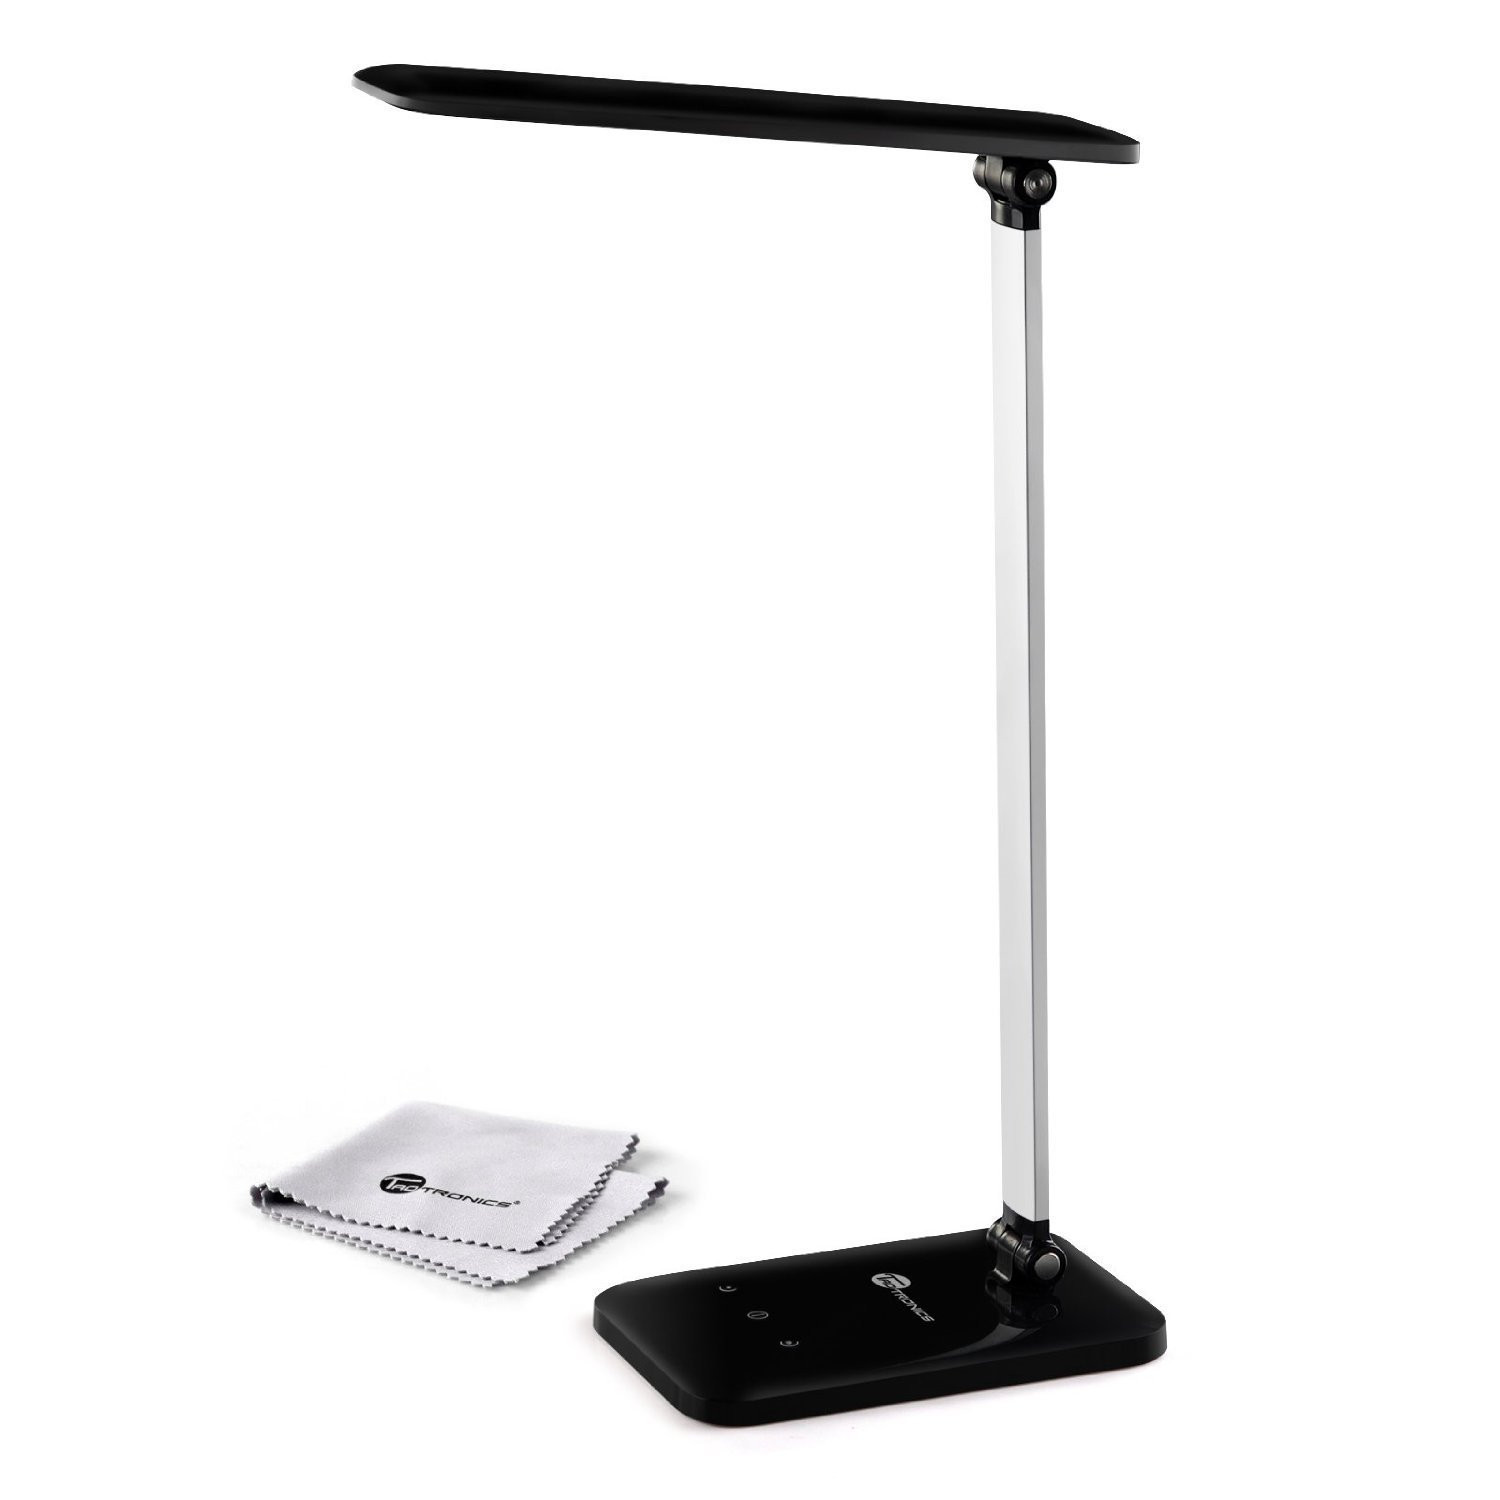 Best ideas about Taotronics Led Desk Lamp
. Save or Pin TaoTronics Dimmable LED Desk Lamp Now.